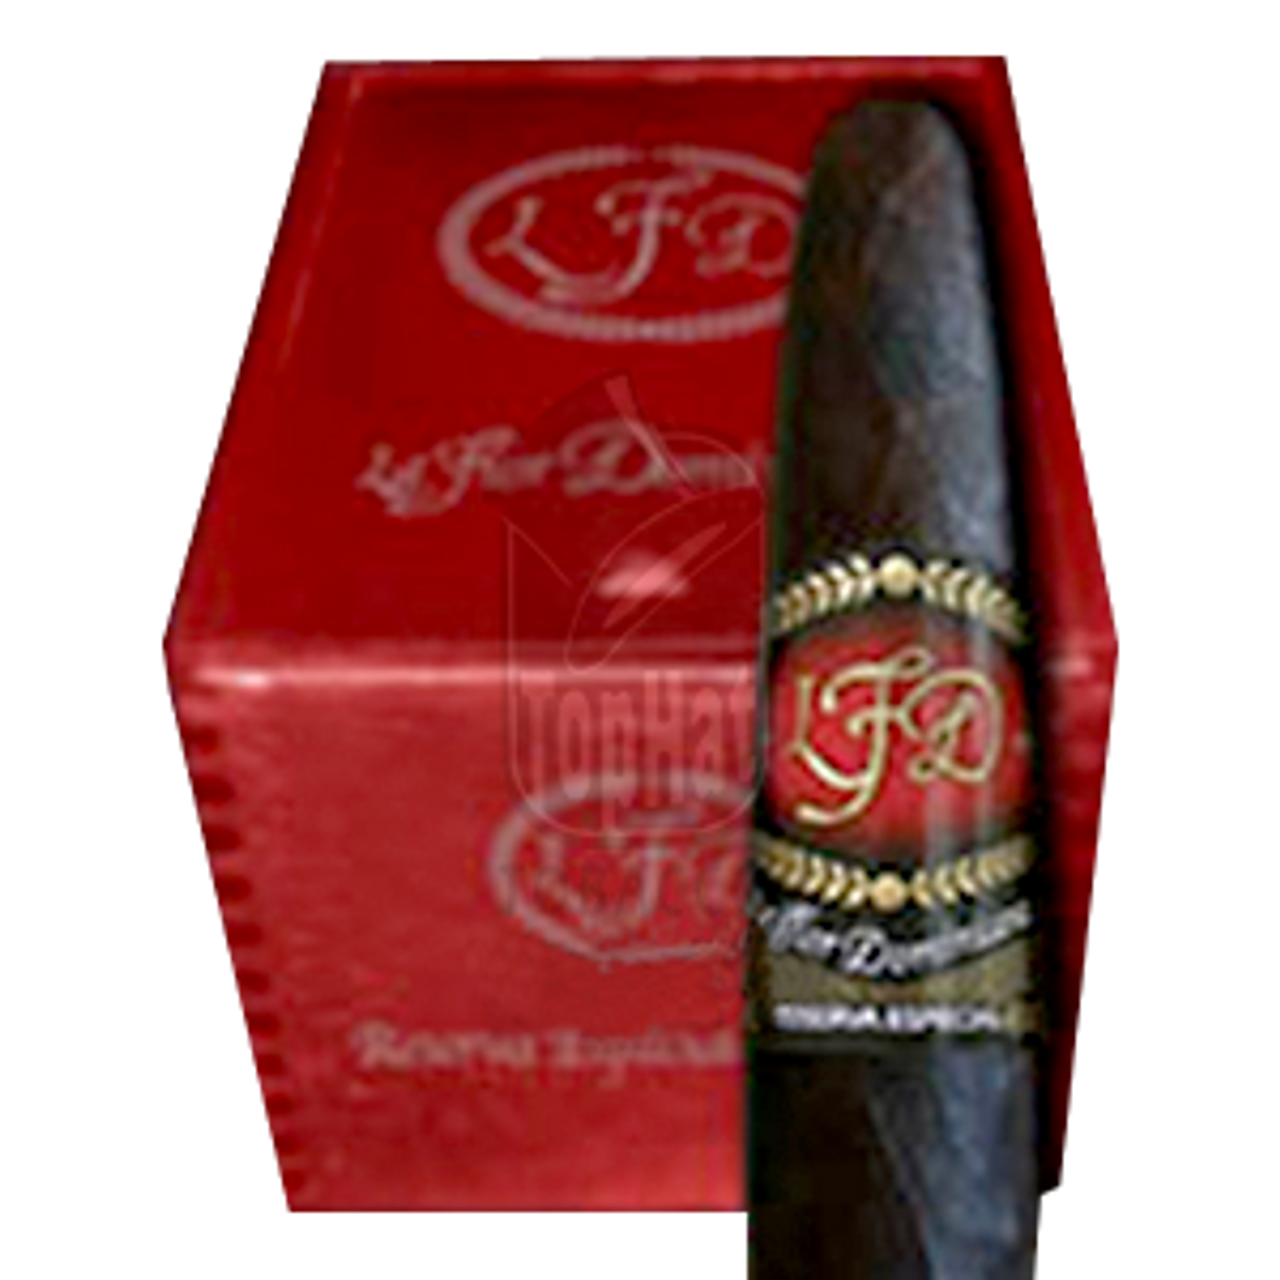 La Flor Dominicana Reserva Especial El Jocko Maduro Cigars - 4 1/2 x 32/54 (Box of 24)